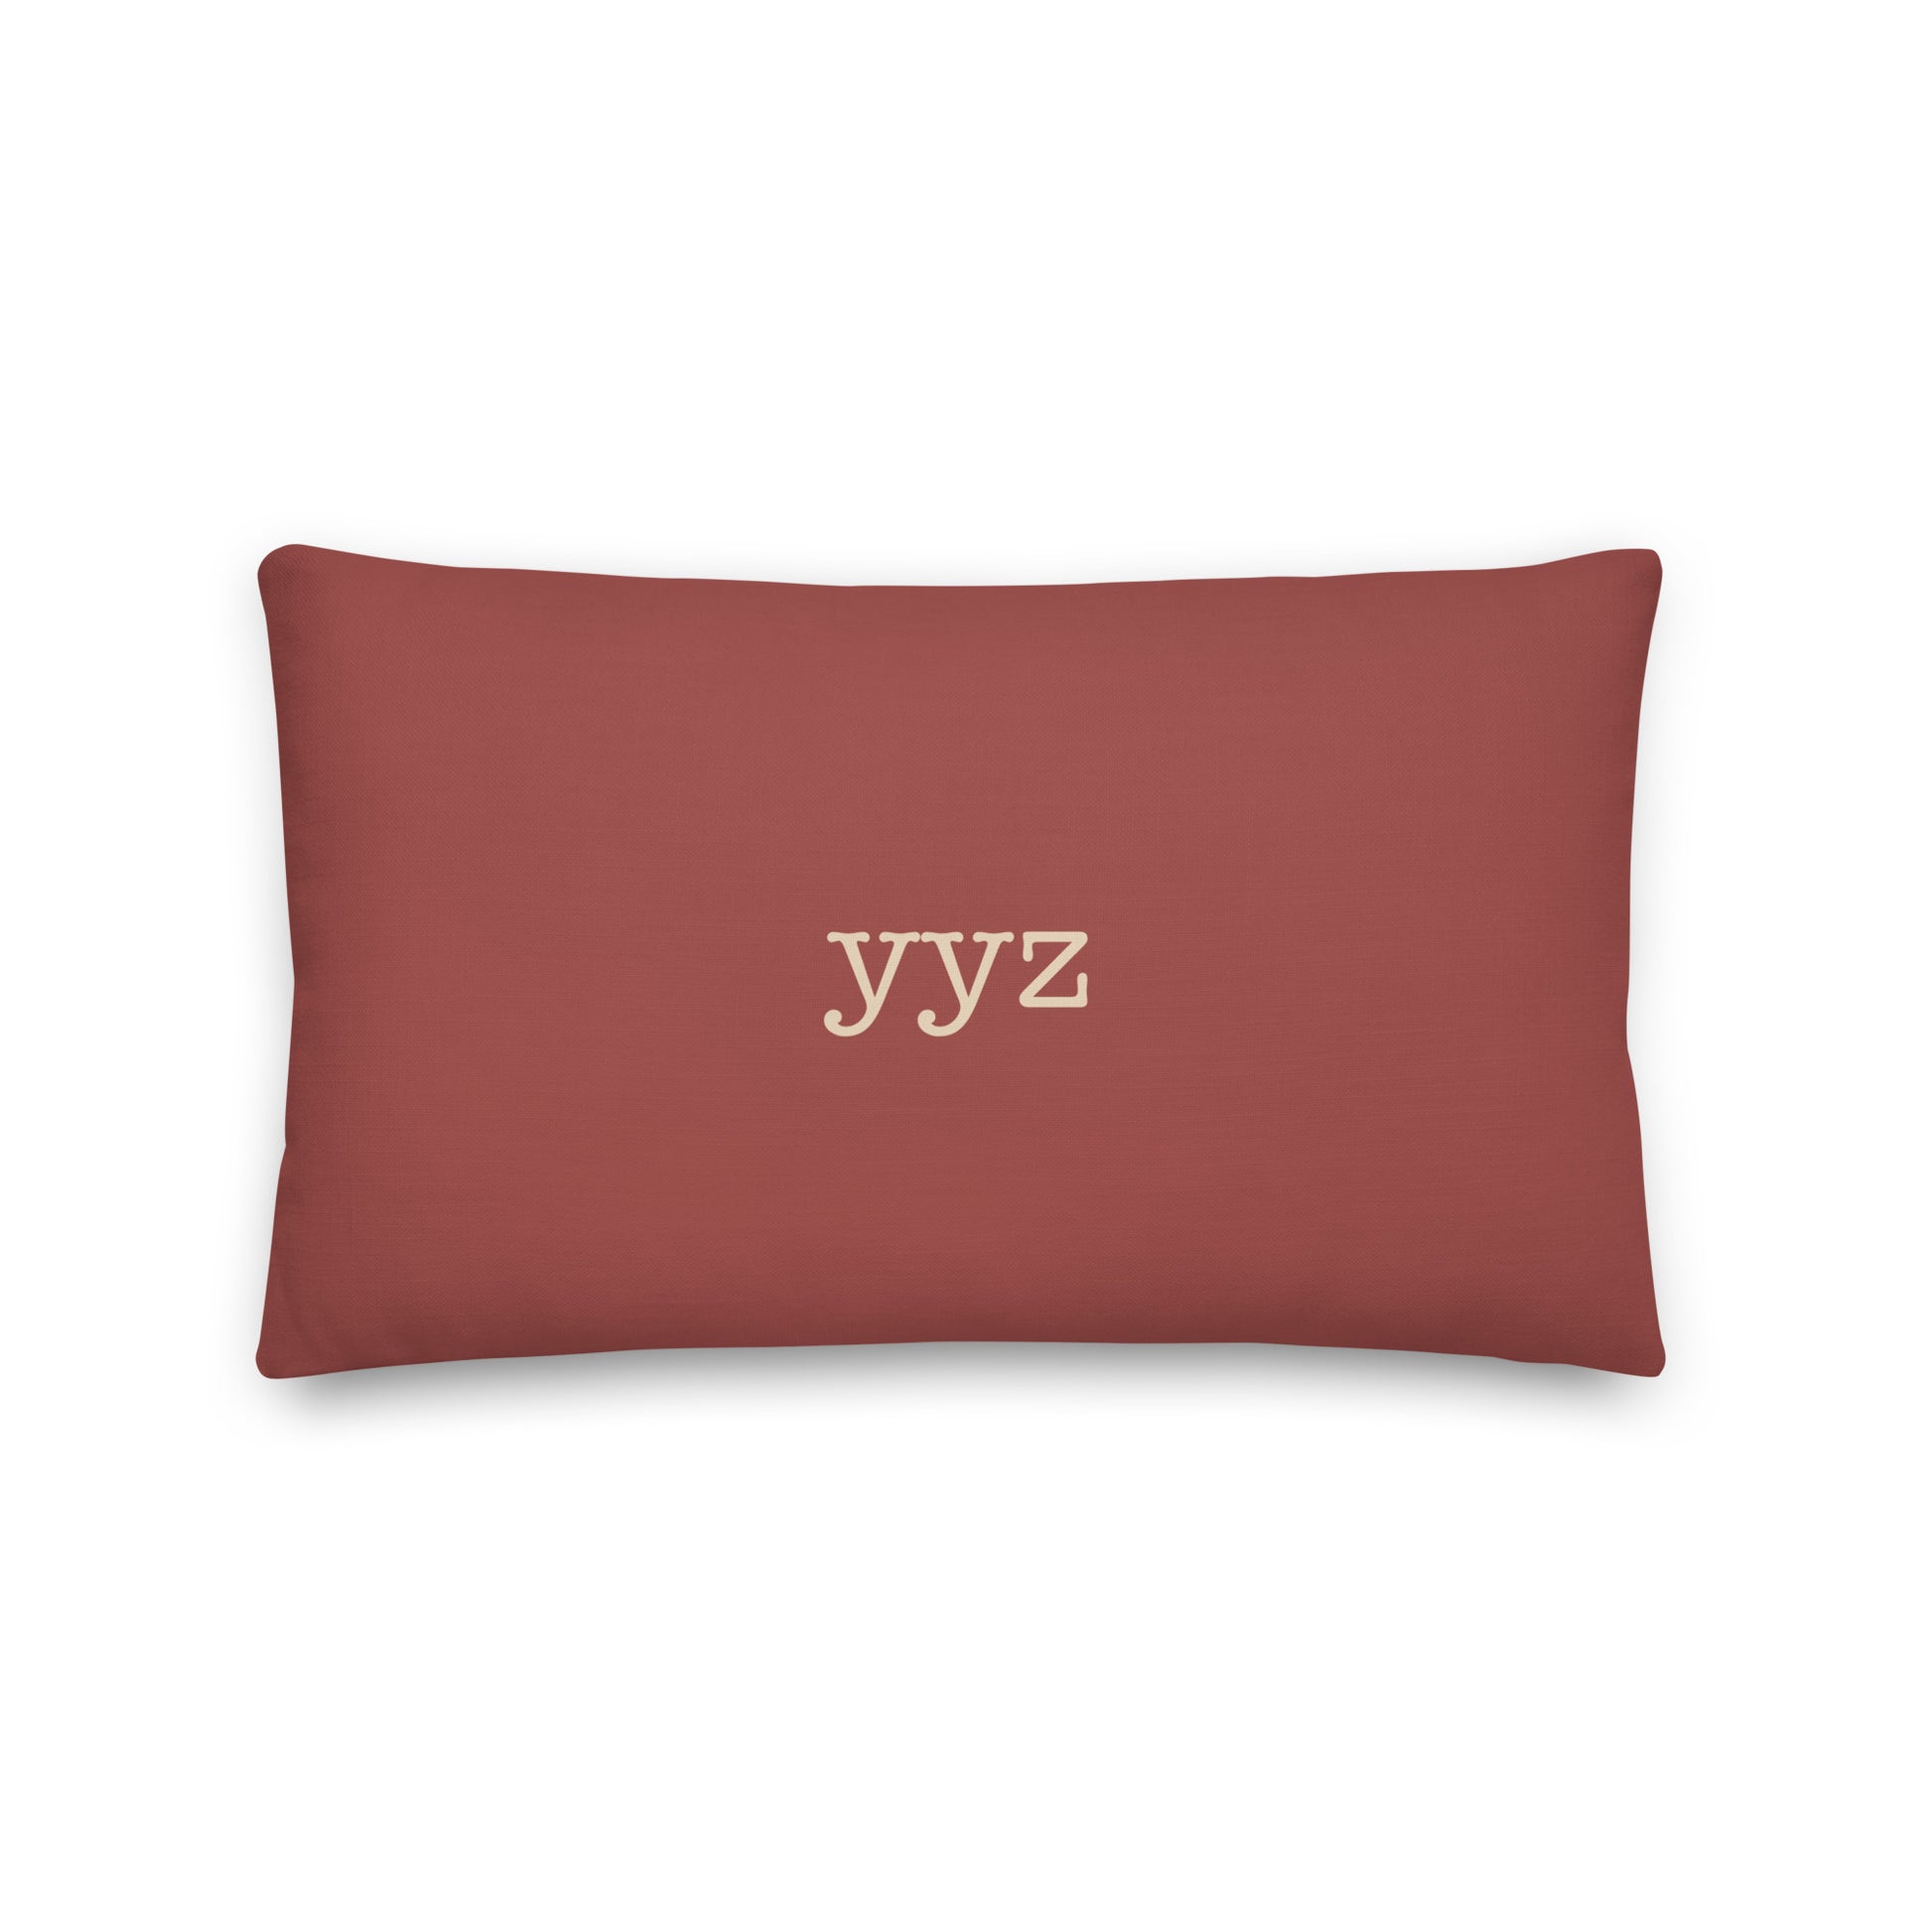 Typewriter Pillow - Terra Cotta • YYZ Toronto • YHM Designs - Image 02